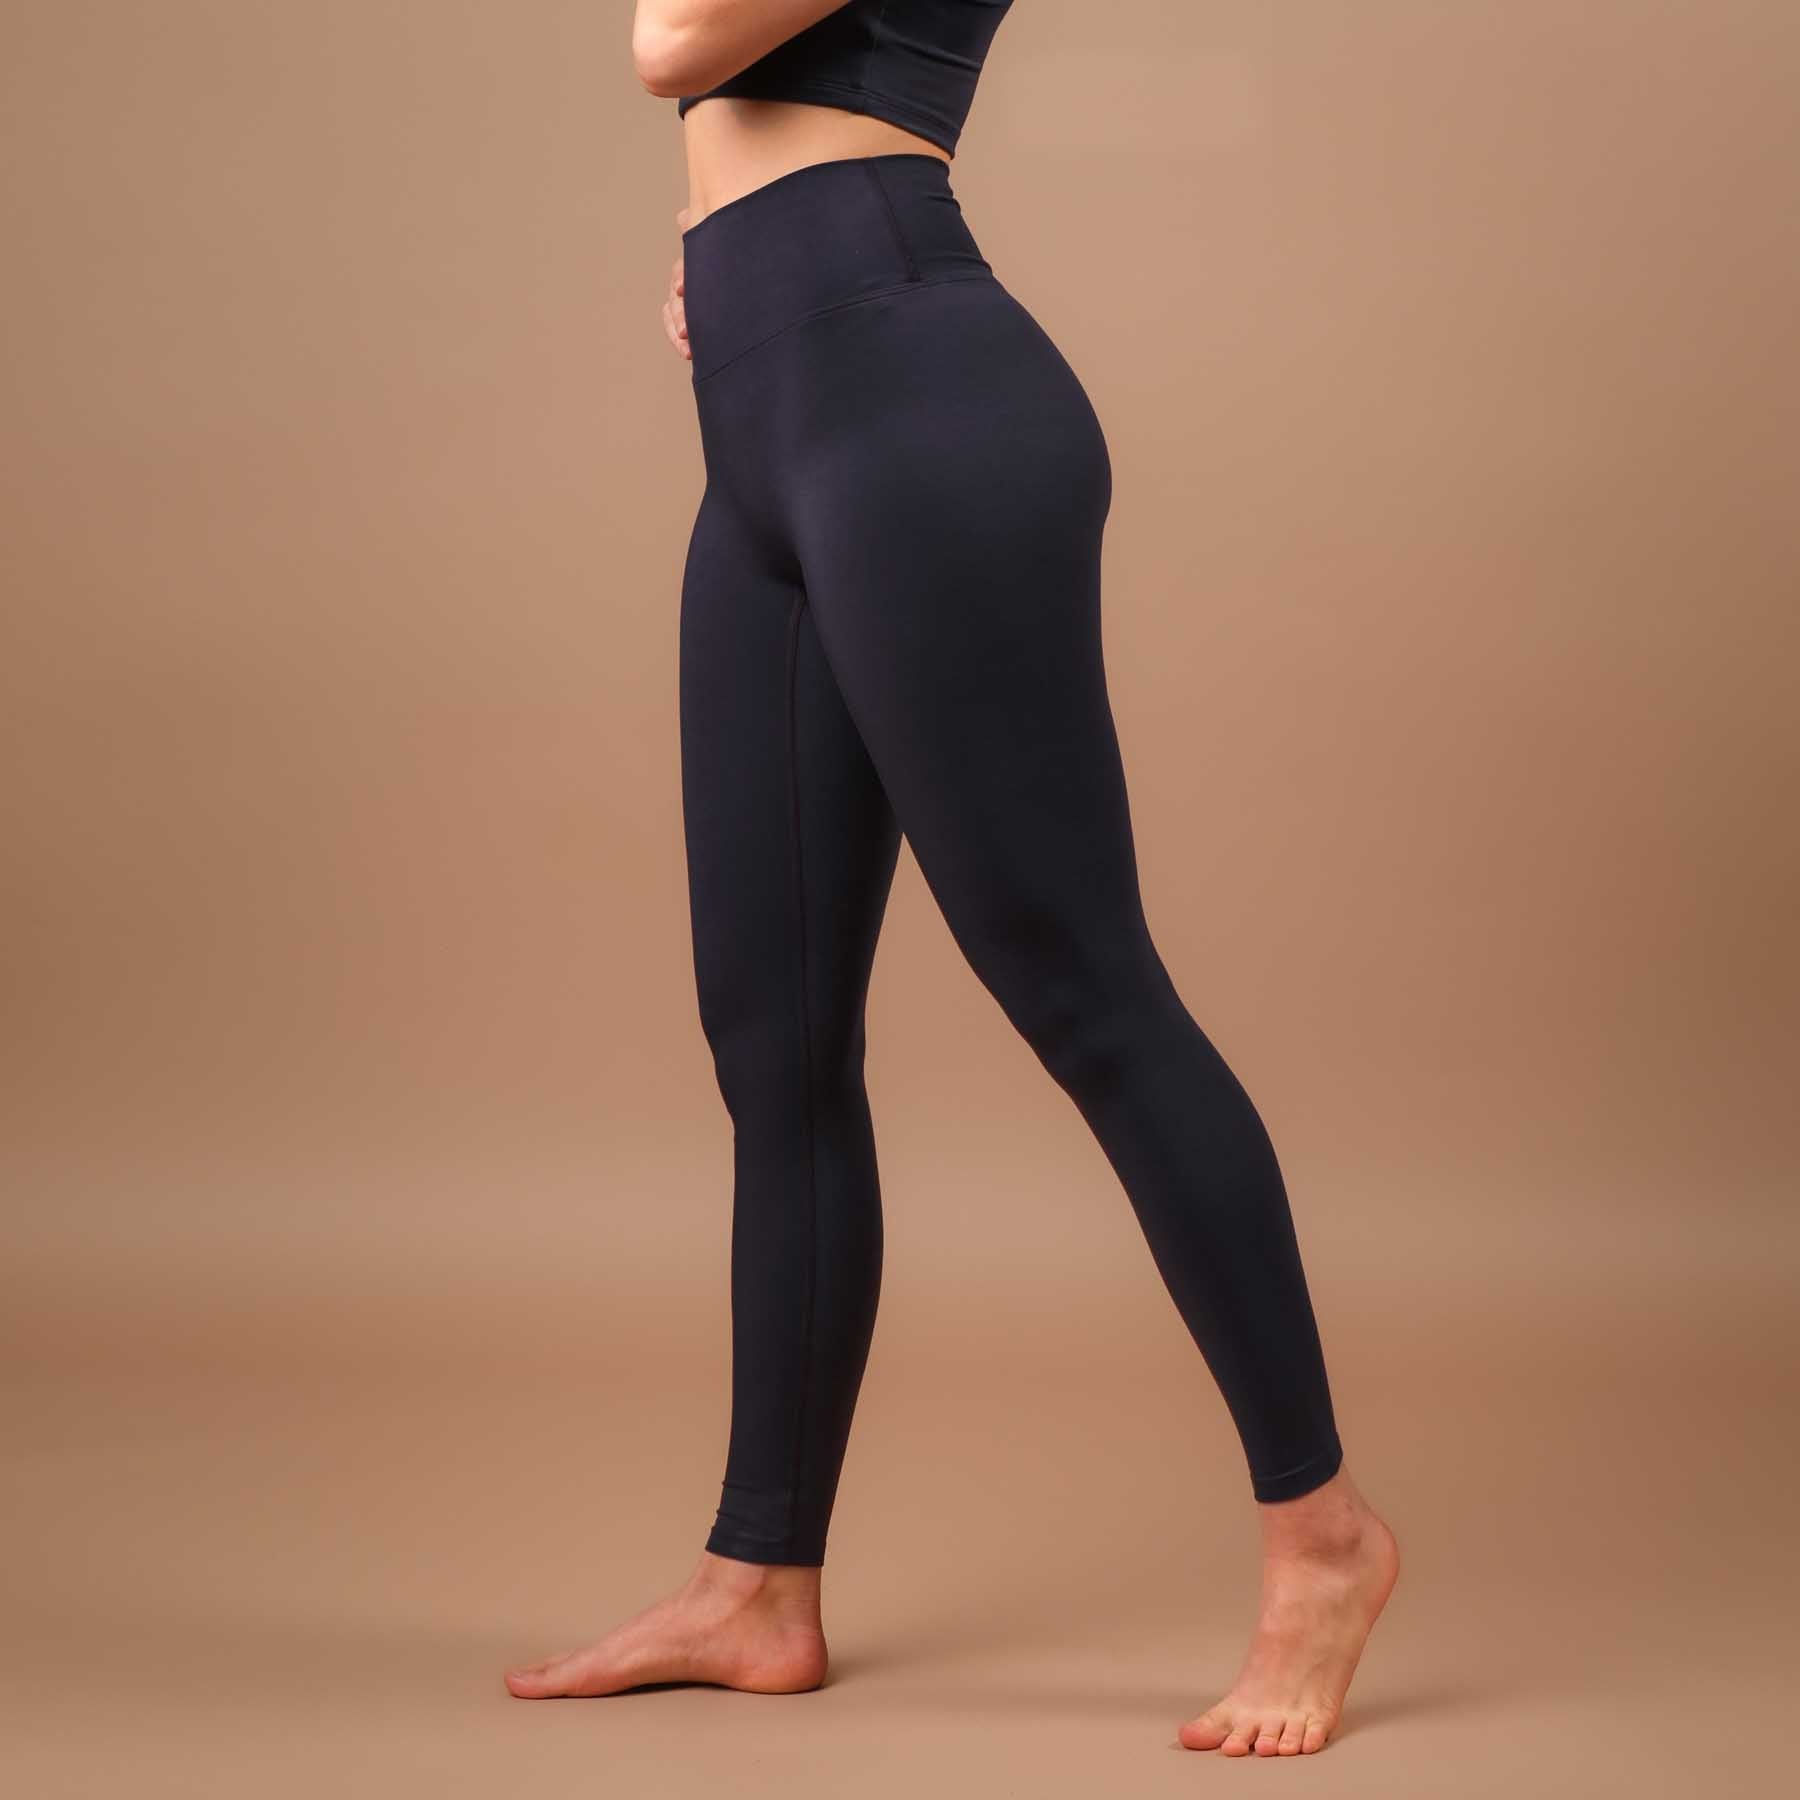 Leggings de yoga durables Comfy navy, super doux, fabriqués en Suisse